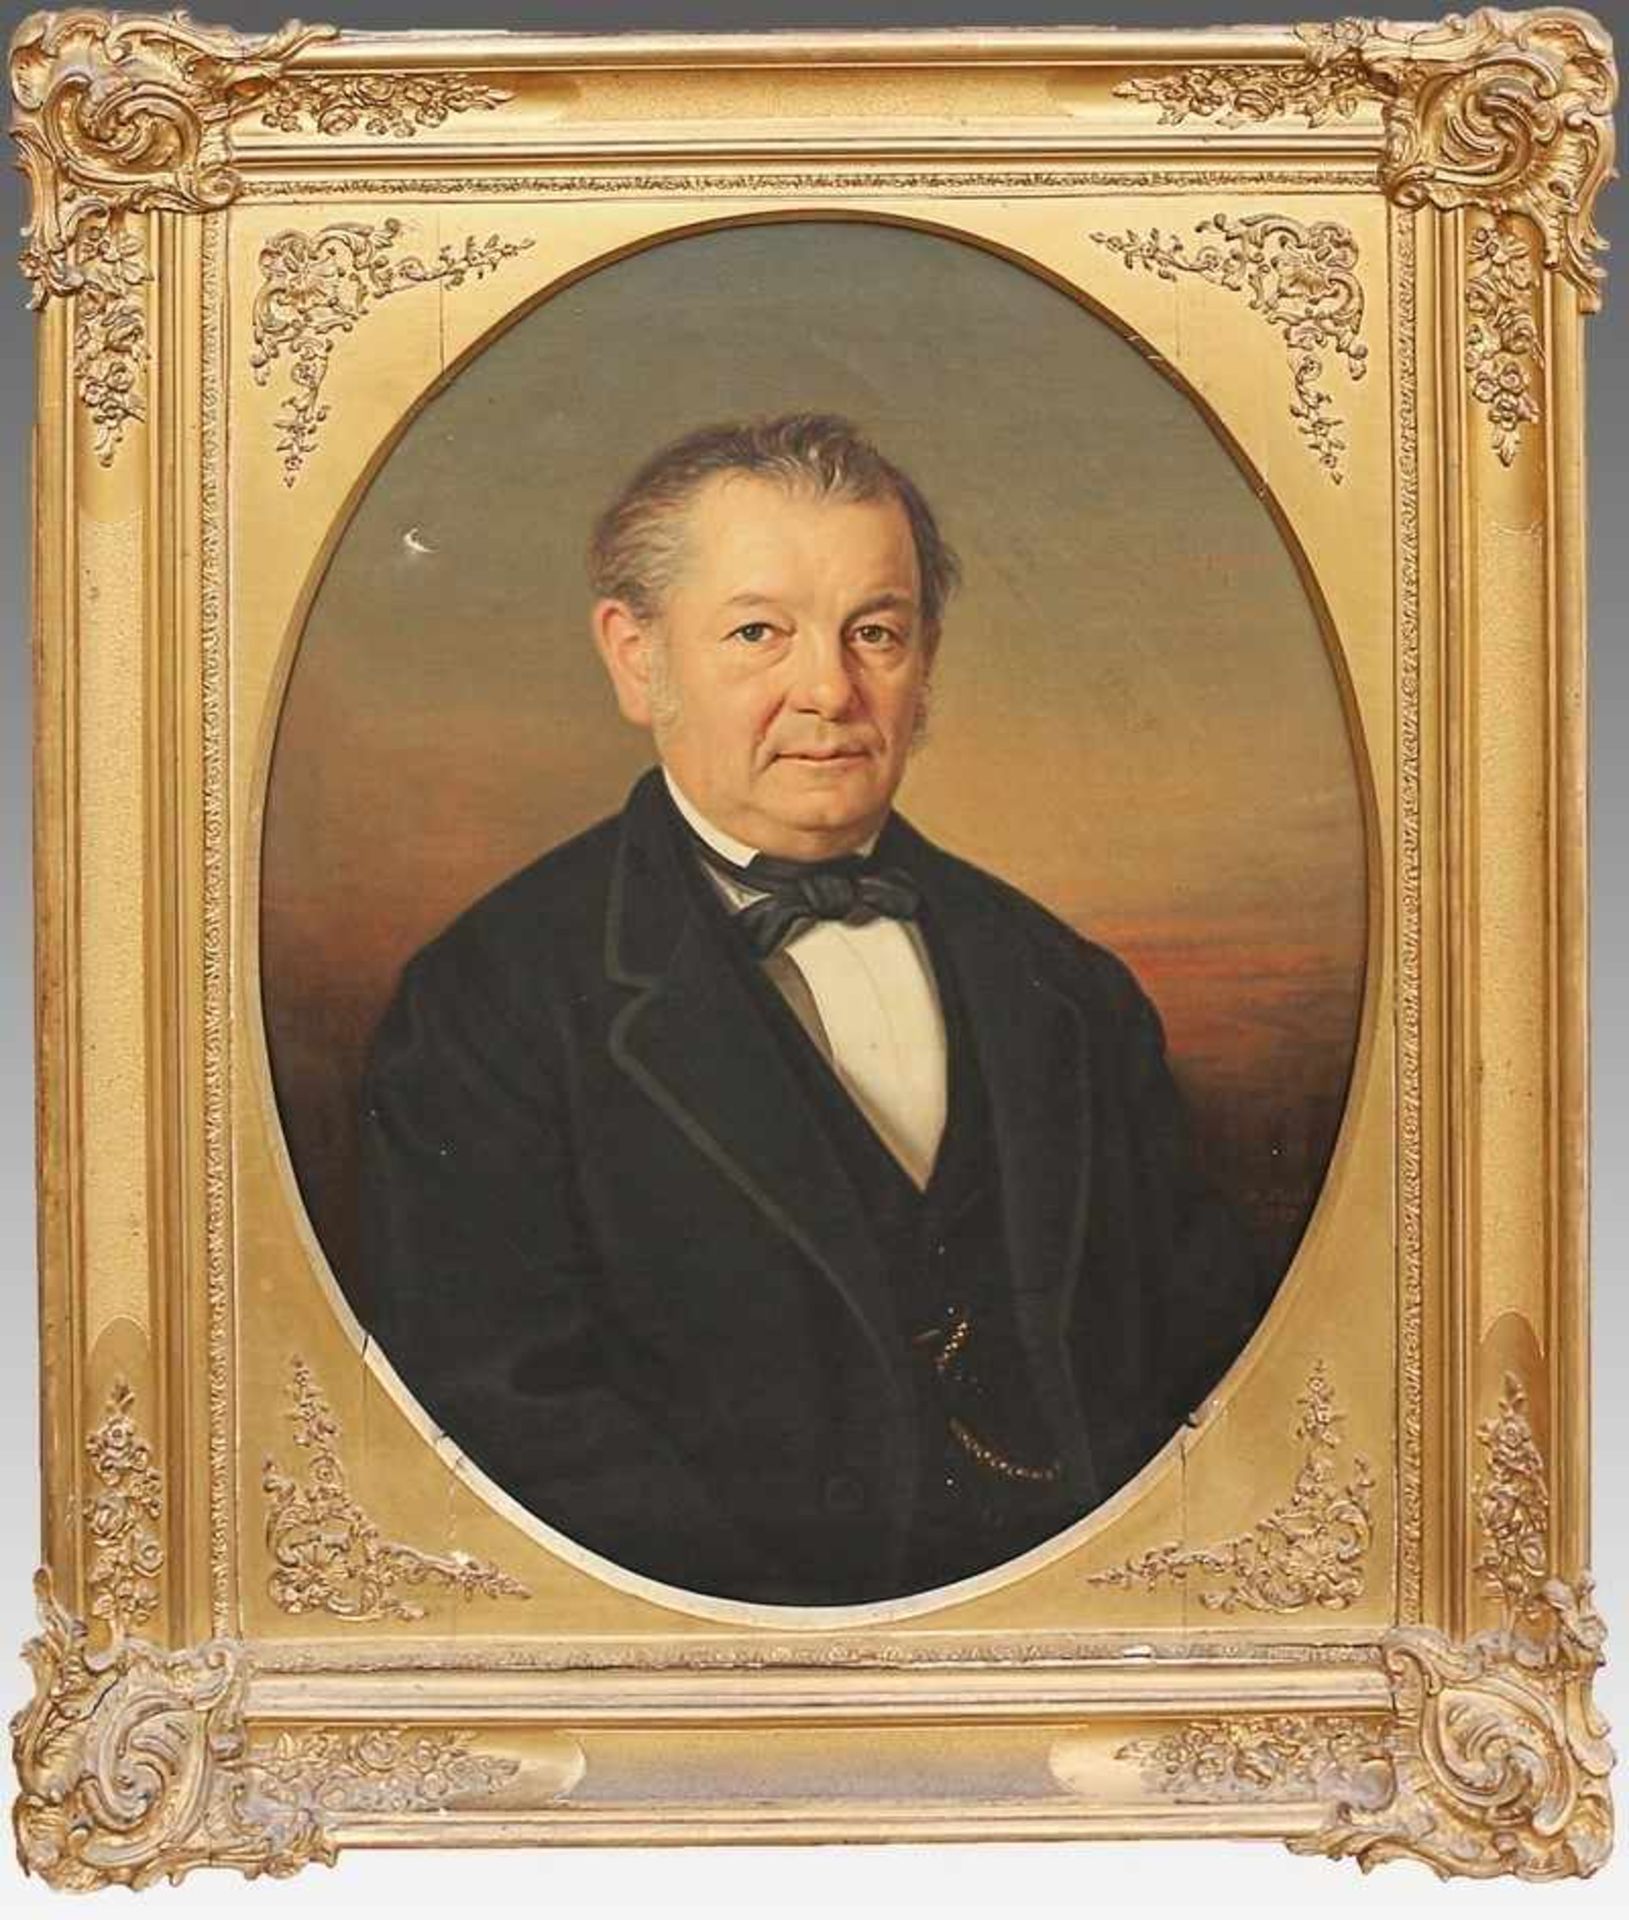 Boch, Adolfwohl Adolf Boch: 1853 Bregenz - 1919 Hörbranz, "Biedermeierportrait eines Herren im